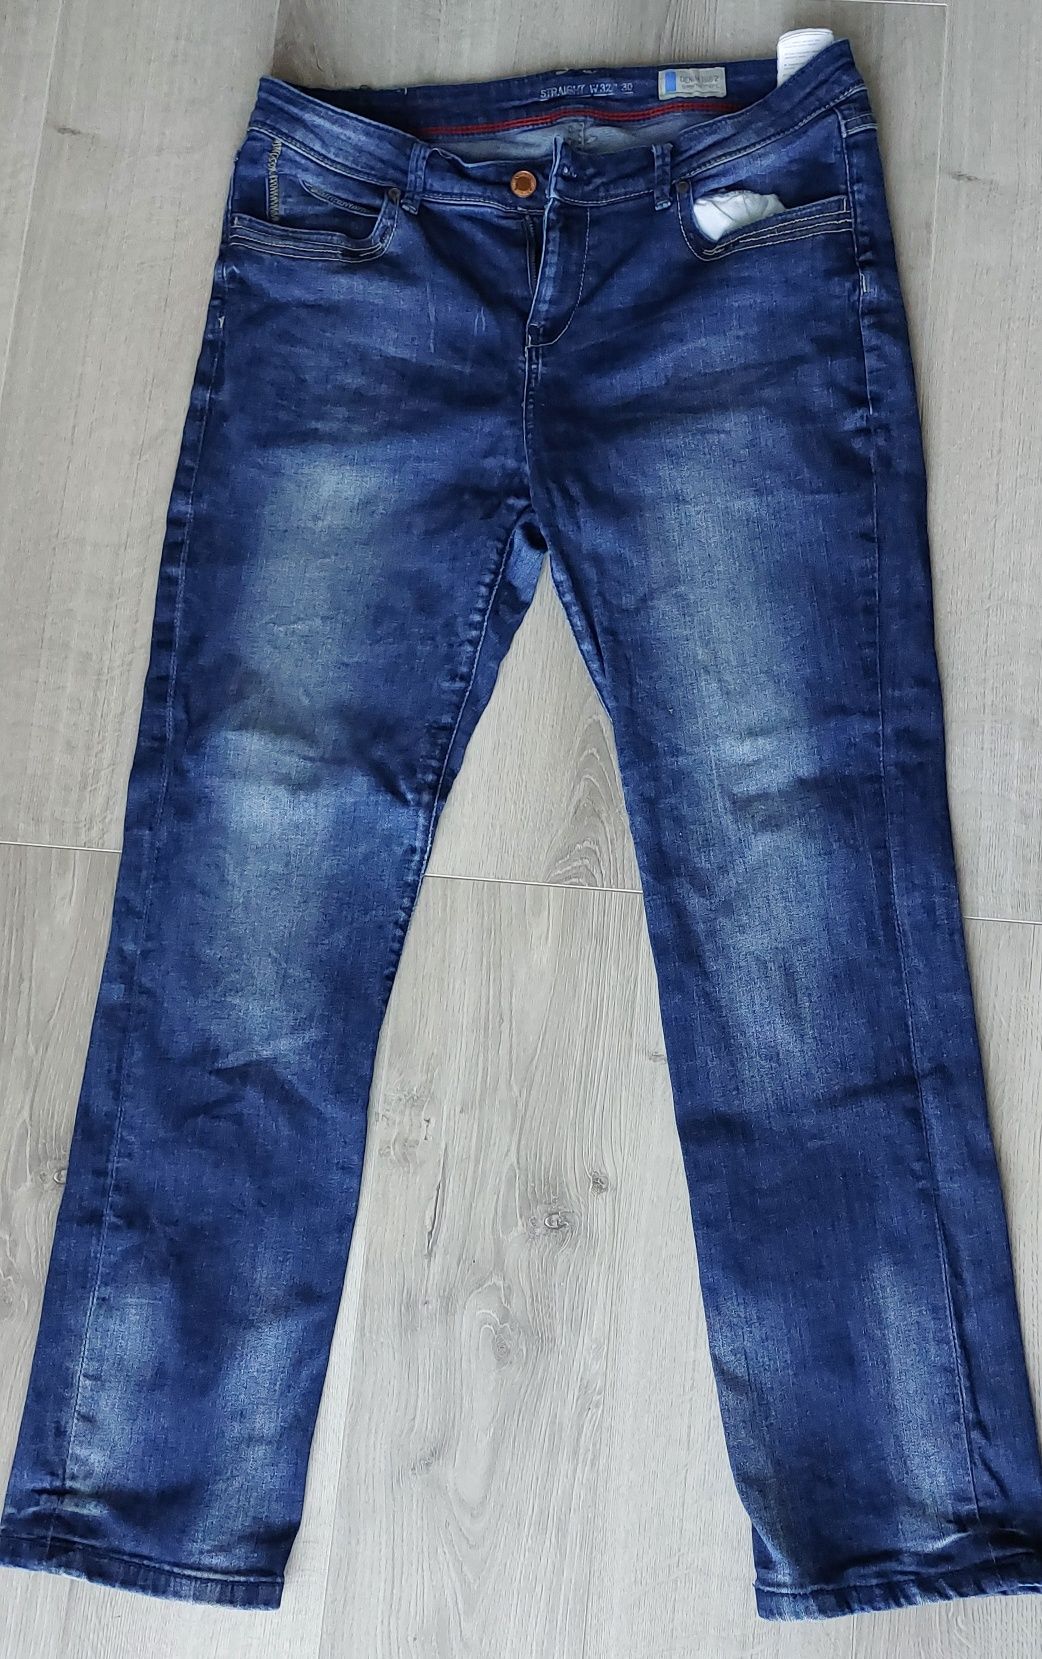 Niebieskie spodnie męskie dżinsowe marki DENIM1982 stan bardzo dobry